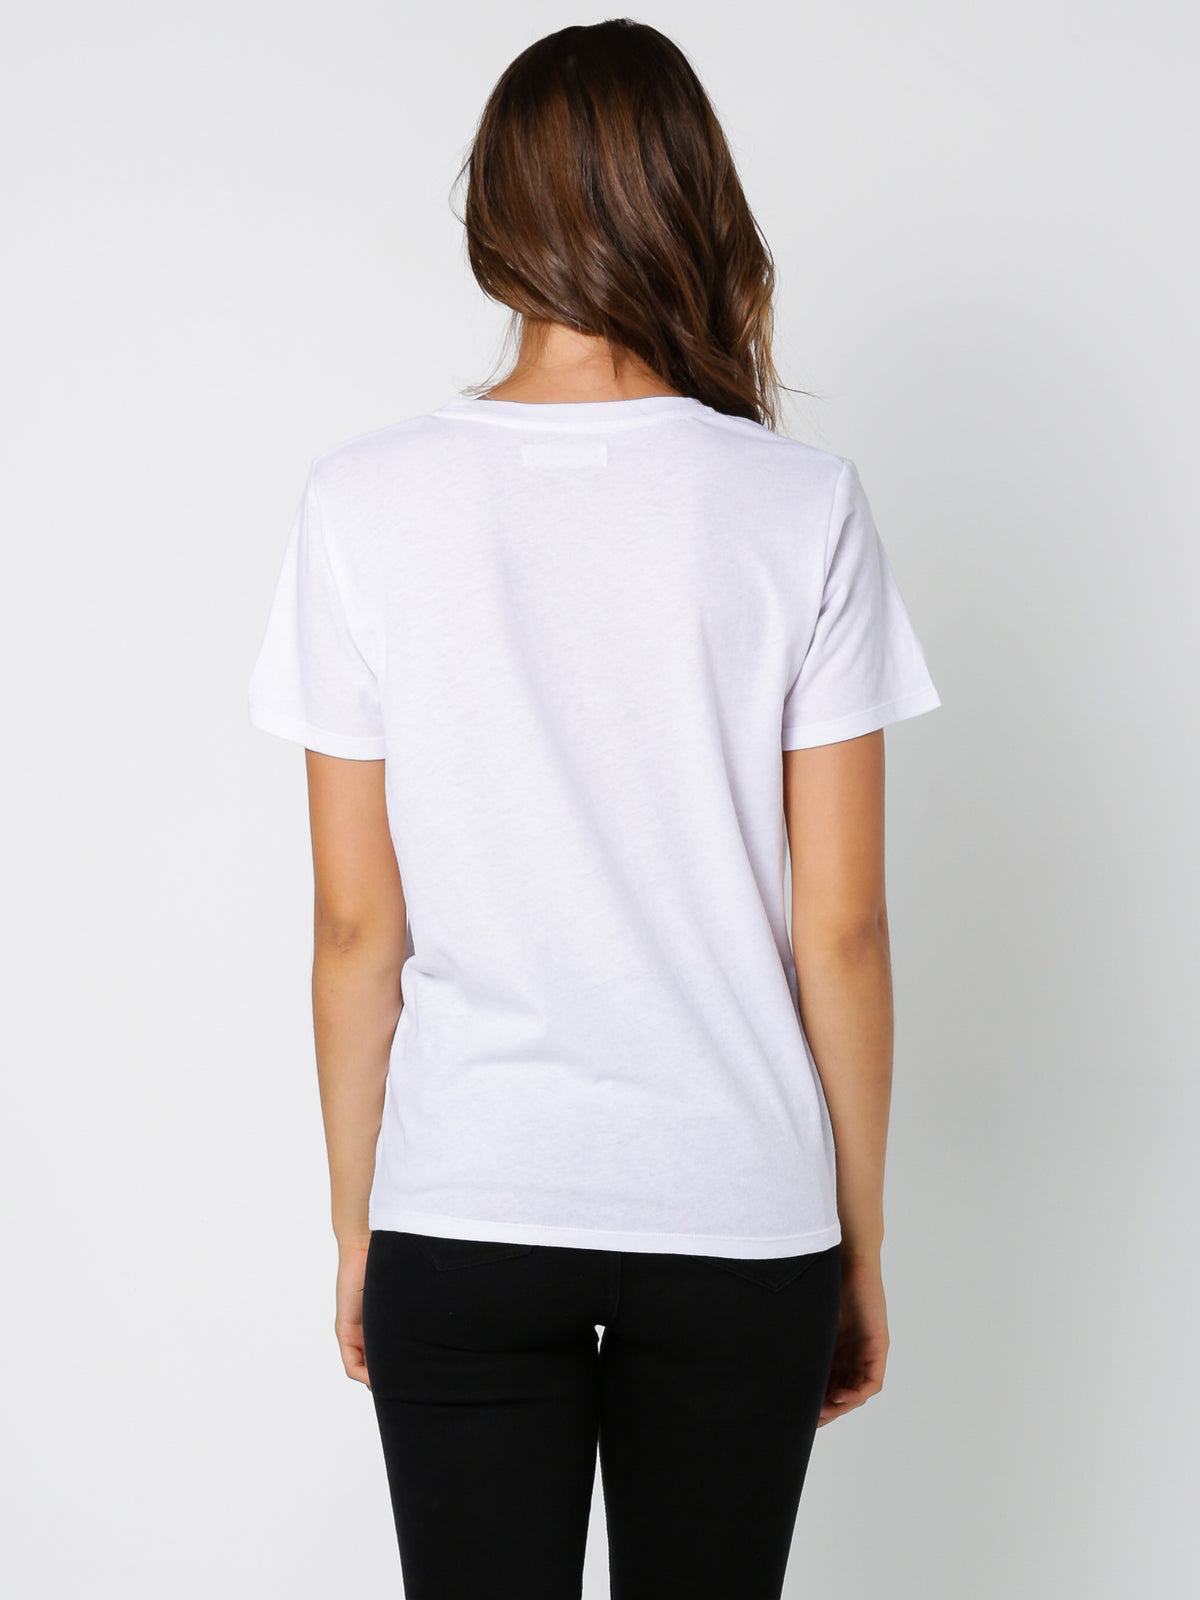 Finn T-Shirt in White